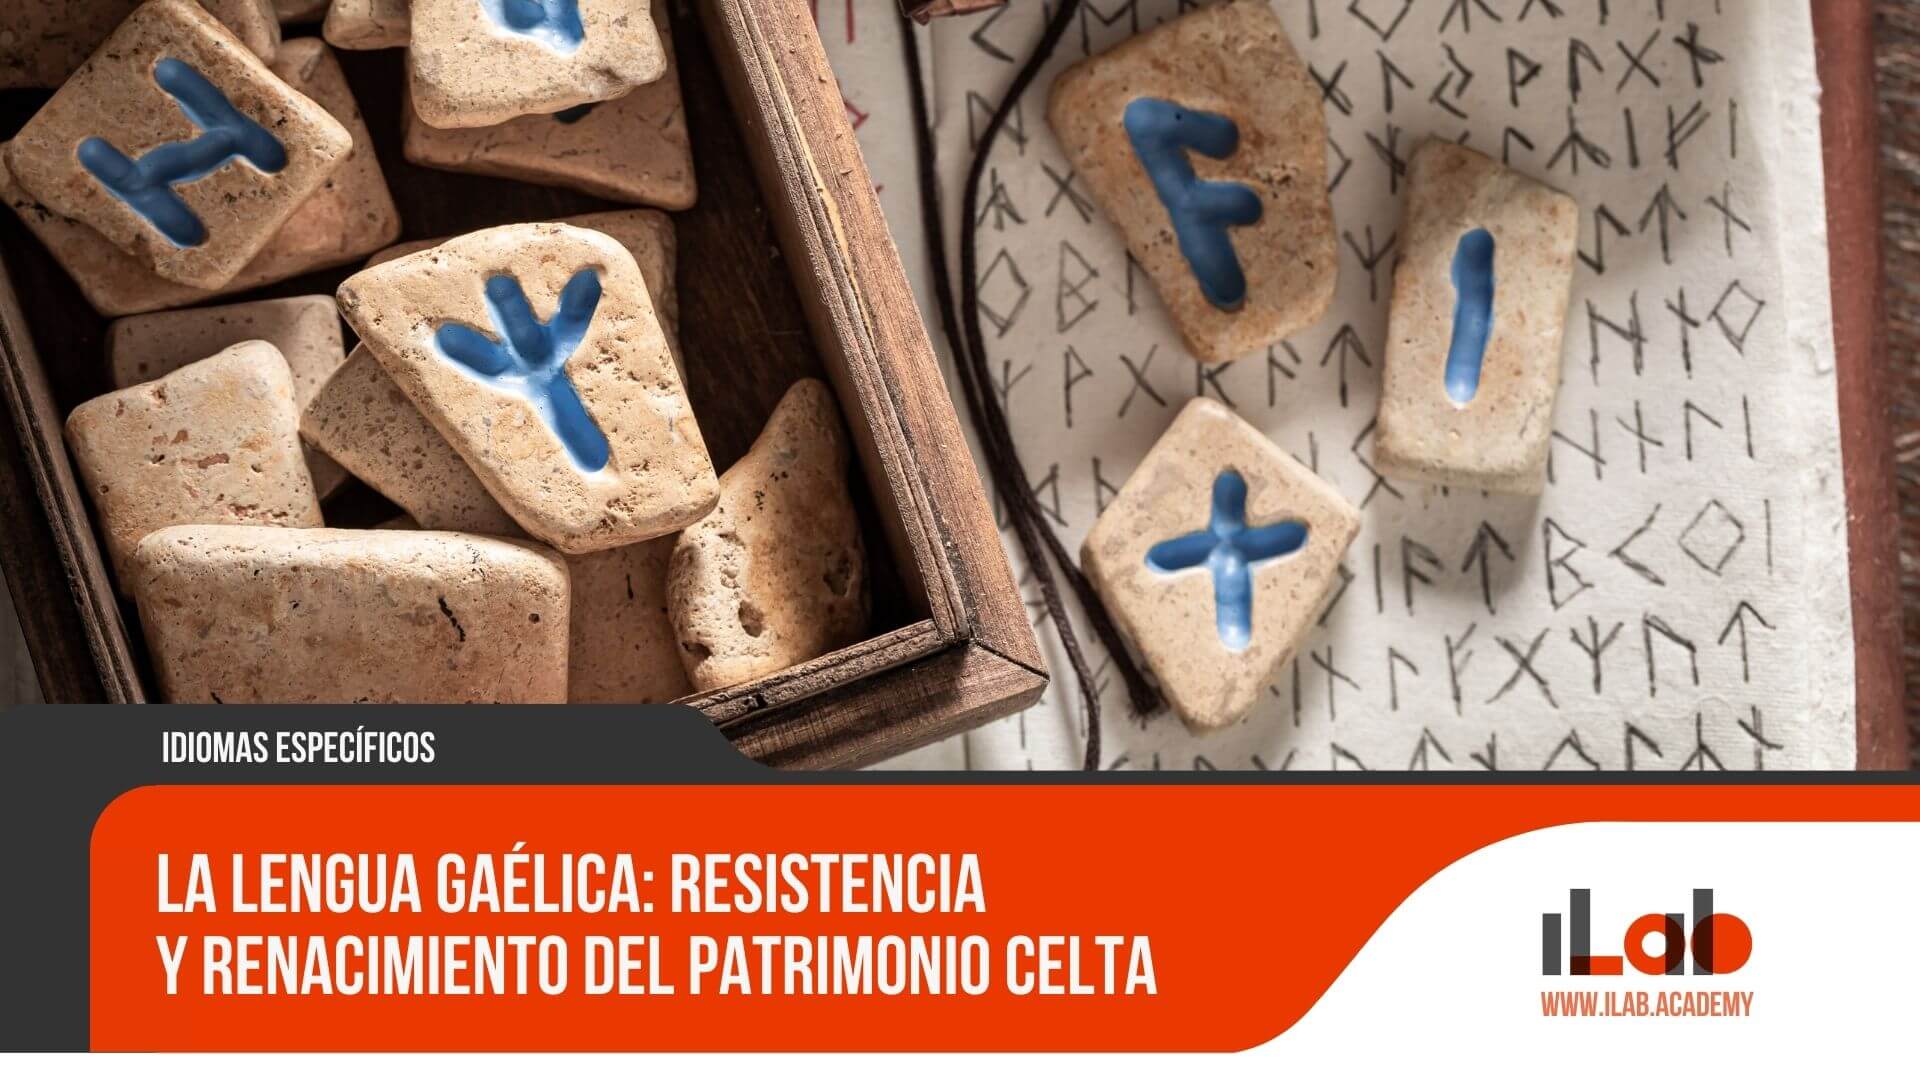 La Lengua Gaélica: Resistencia y renacimiento del patrimonio celta